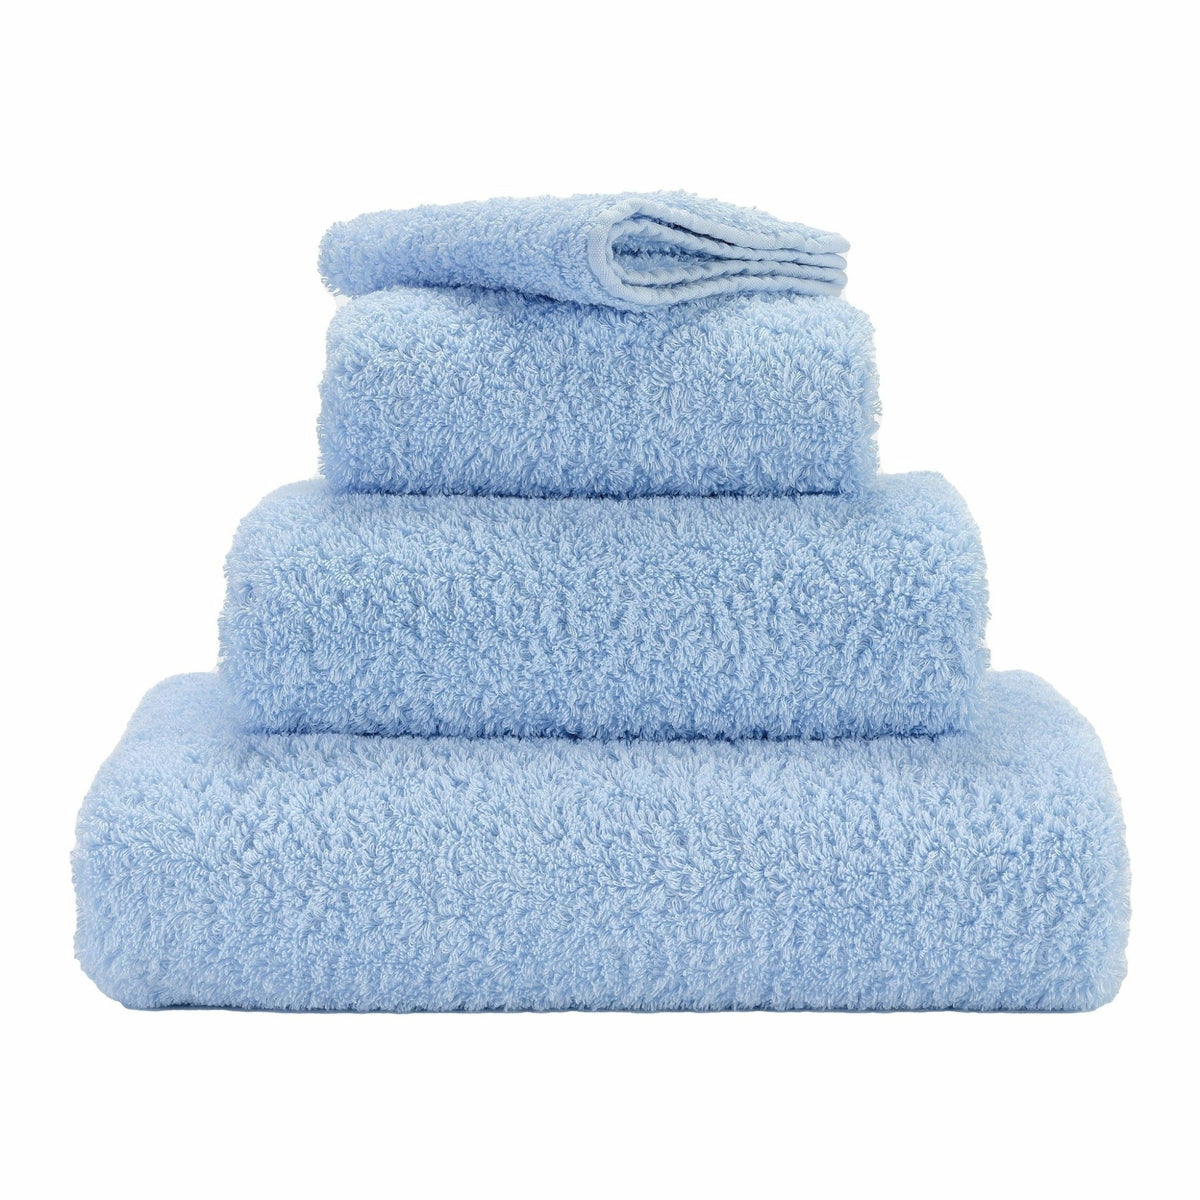 Abyss Super Pile Bath Towels Powder Blue Fine Linens